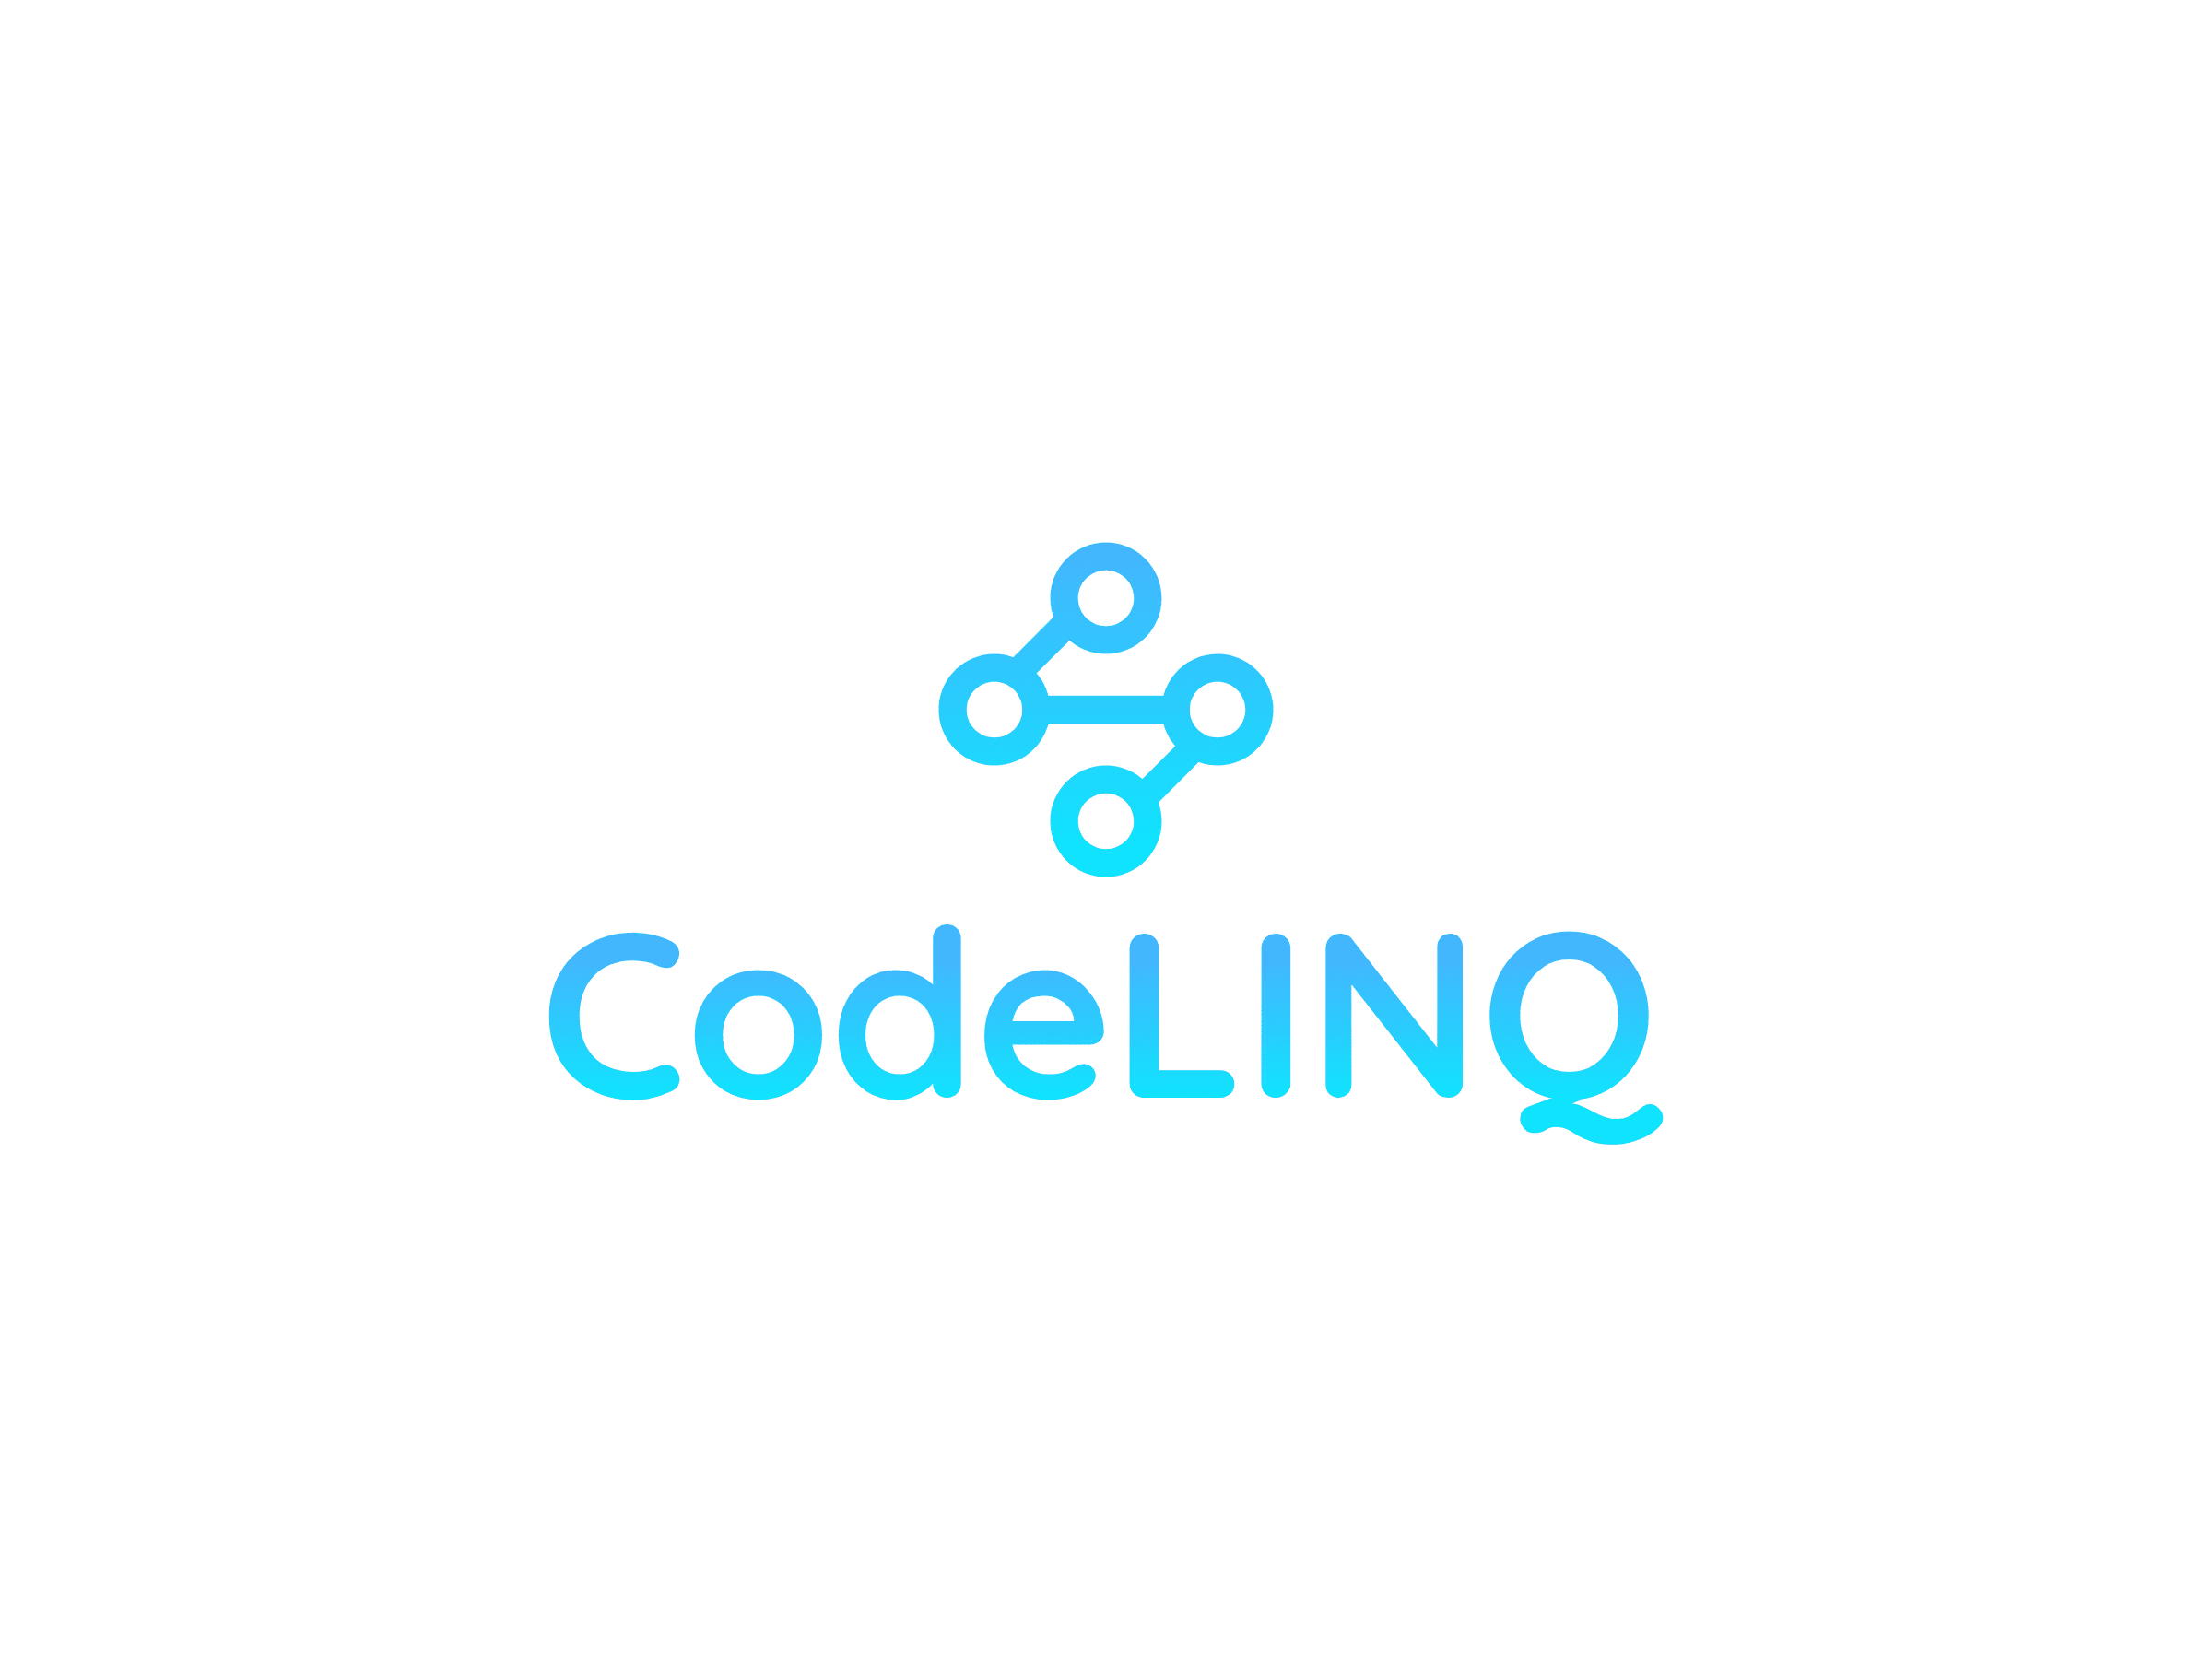 ピープルズコンピュータ合同会社 CodeLINQのロゴ